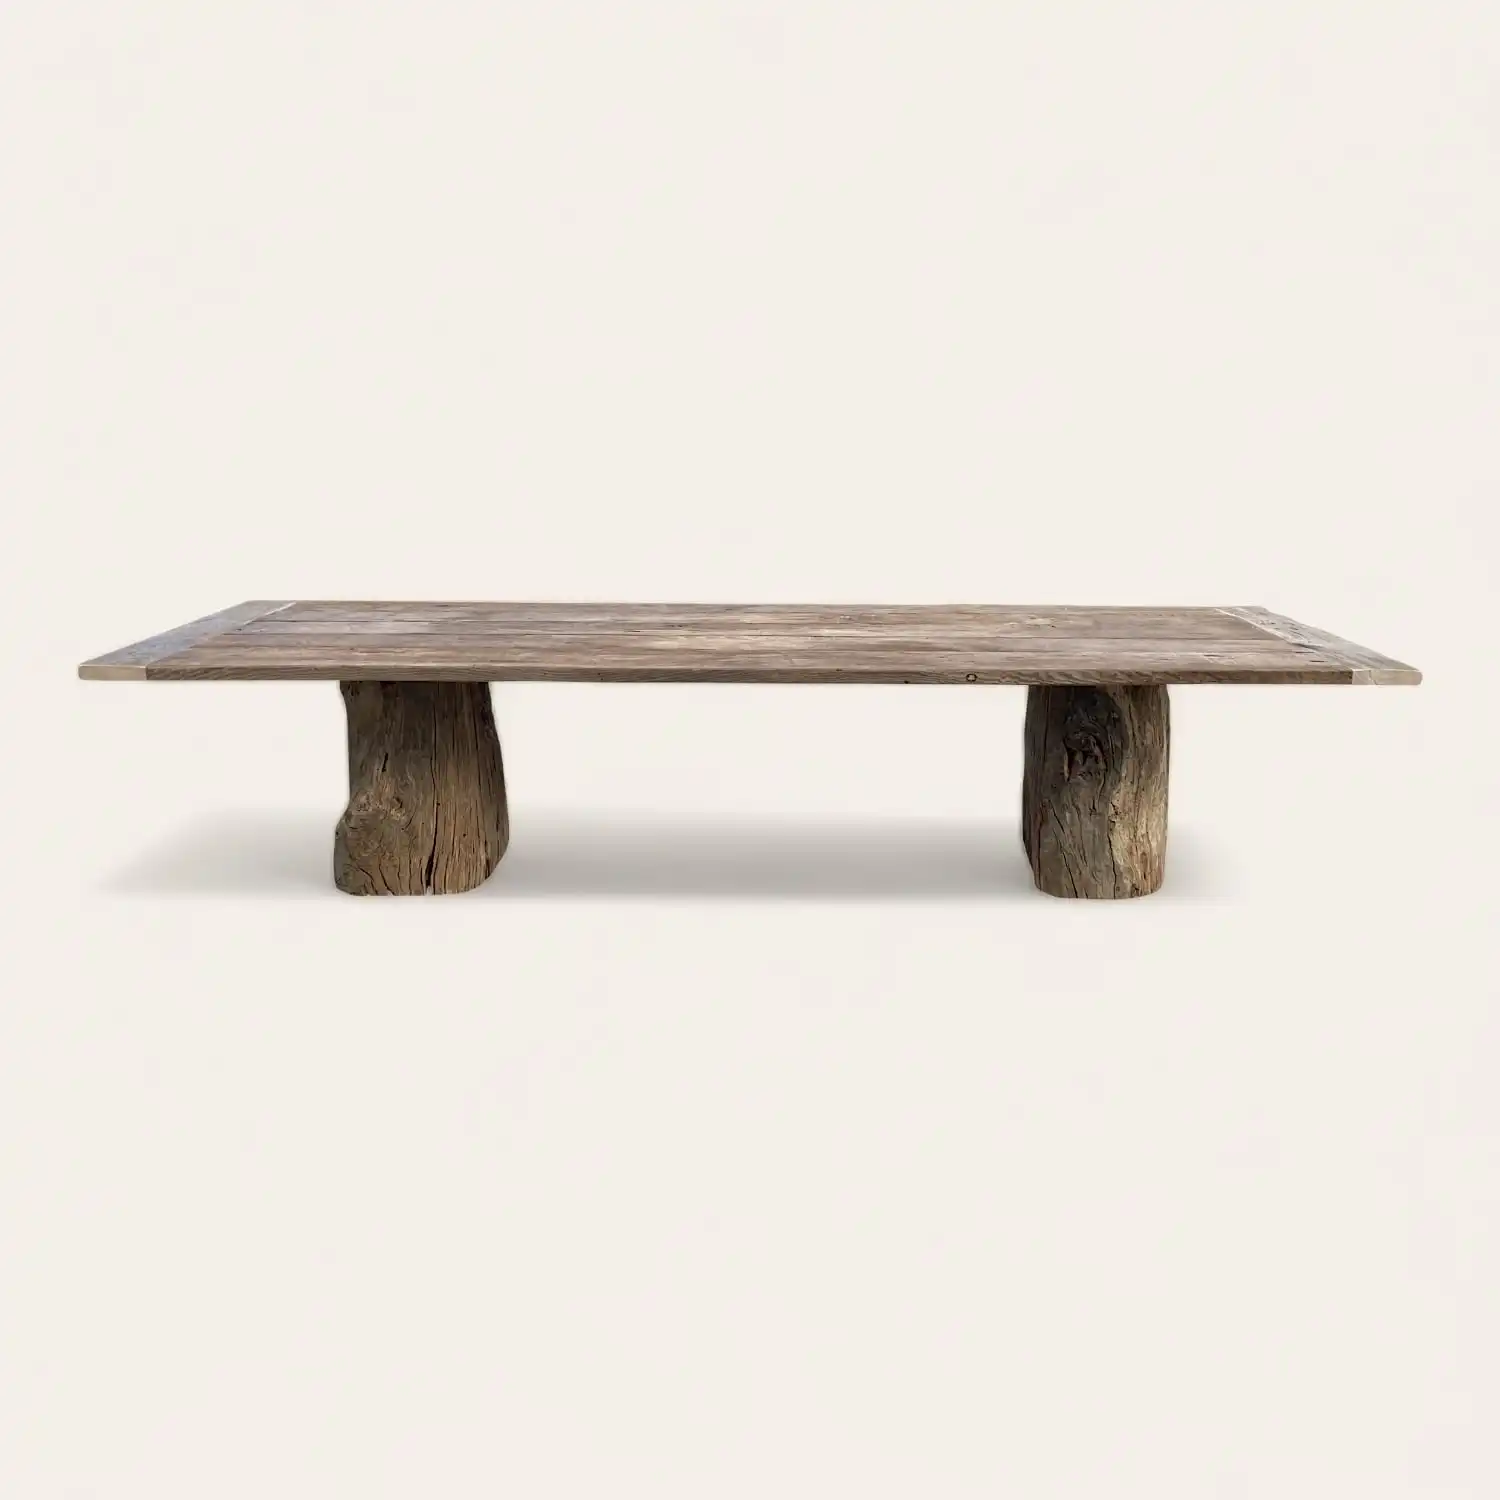  Une table à manger rustique en bois avec un piètement en bois tronc. 